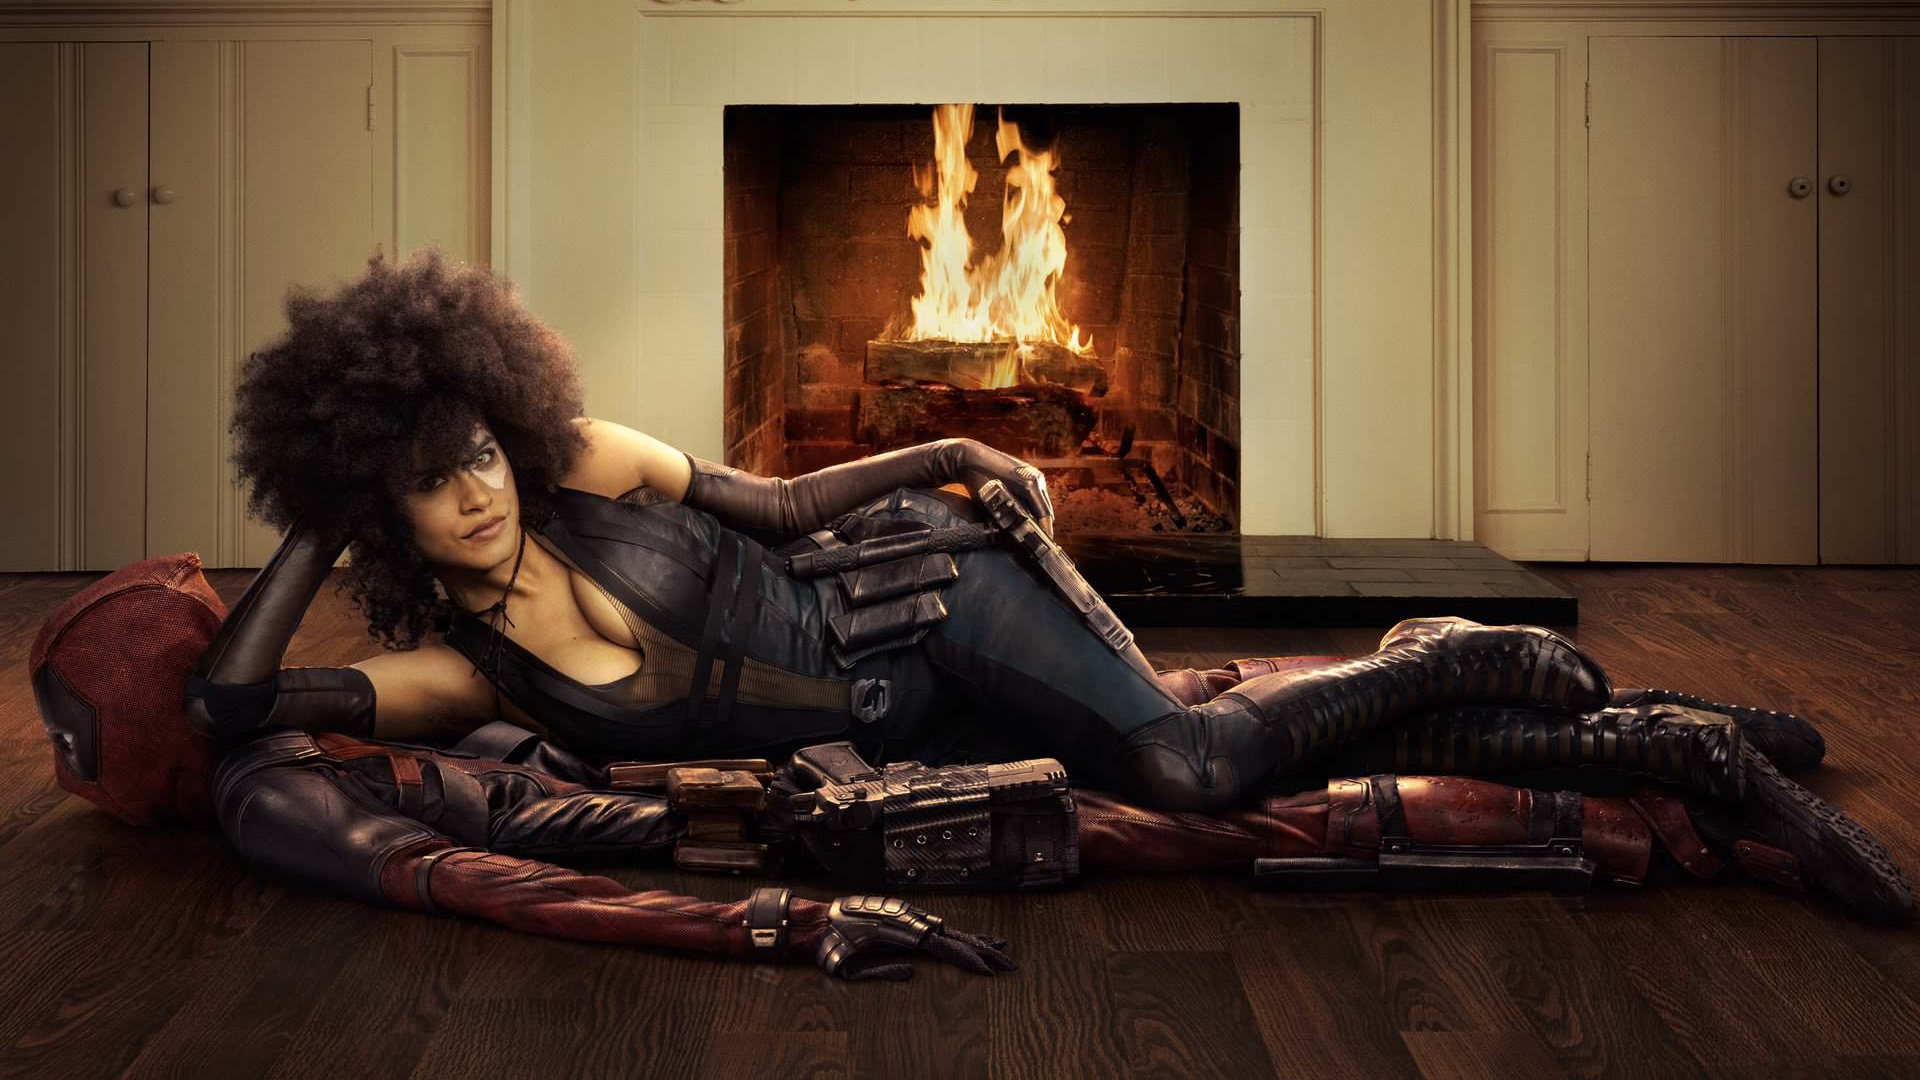 Zazie Beetz as Domino in Deadpool